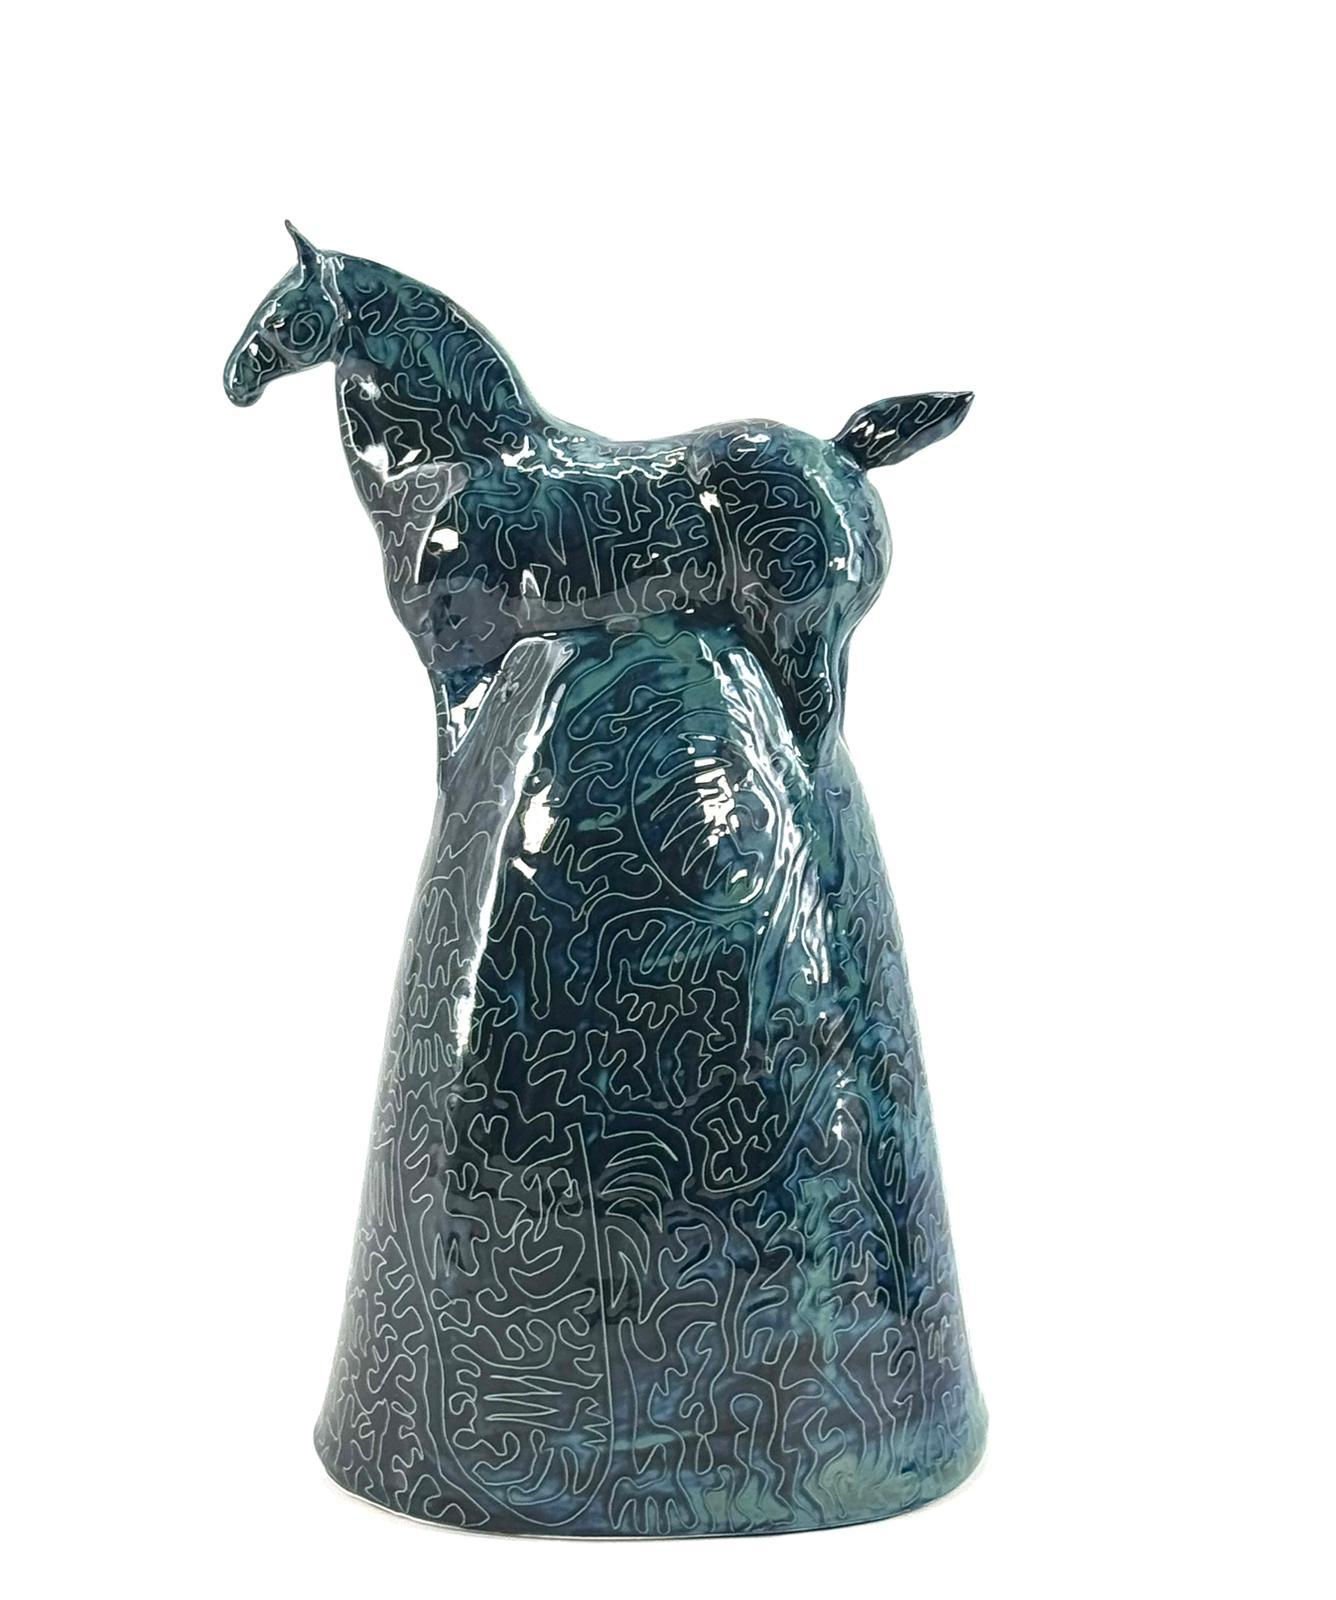 Das Stück ist eine einzigartige Darstellung eines Pferdes in einer modernen Form. Das Tier wird in behutsamer Handarbeit aus Ton hergestellt und von Hand bearbeitet. Alle Stücke von Mosche Bianche sind einzigartig, da sie ohne jegliche Form